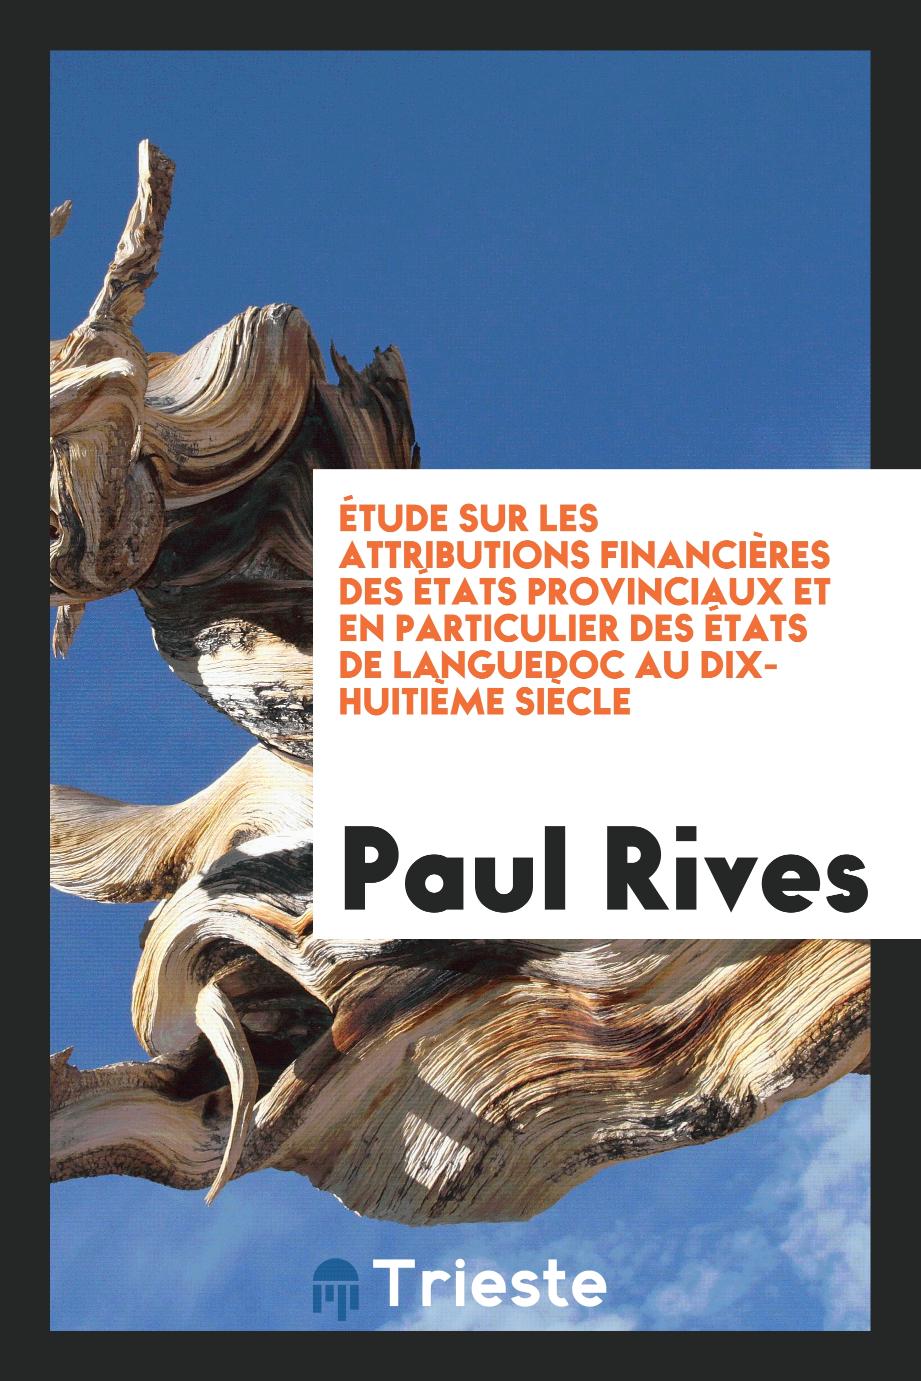 Étude sur les attributions financières des états provinciaux et en particulier des états de Languedoc au dix-huitième siècle